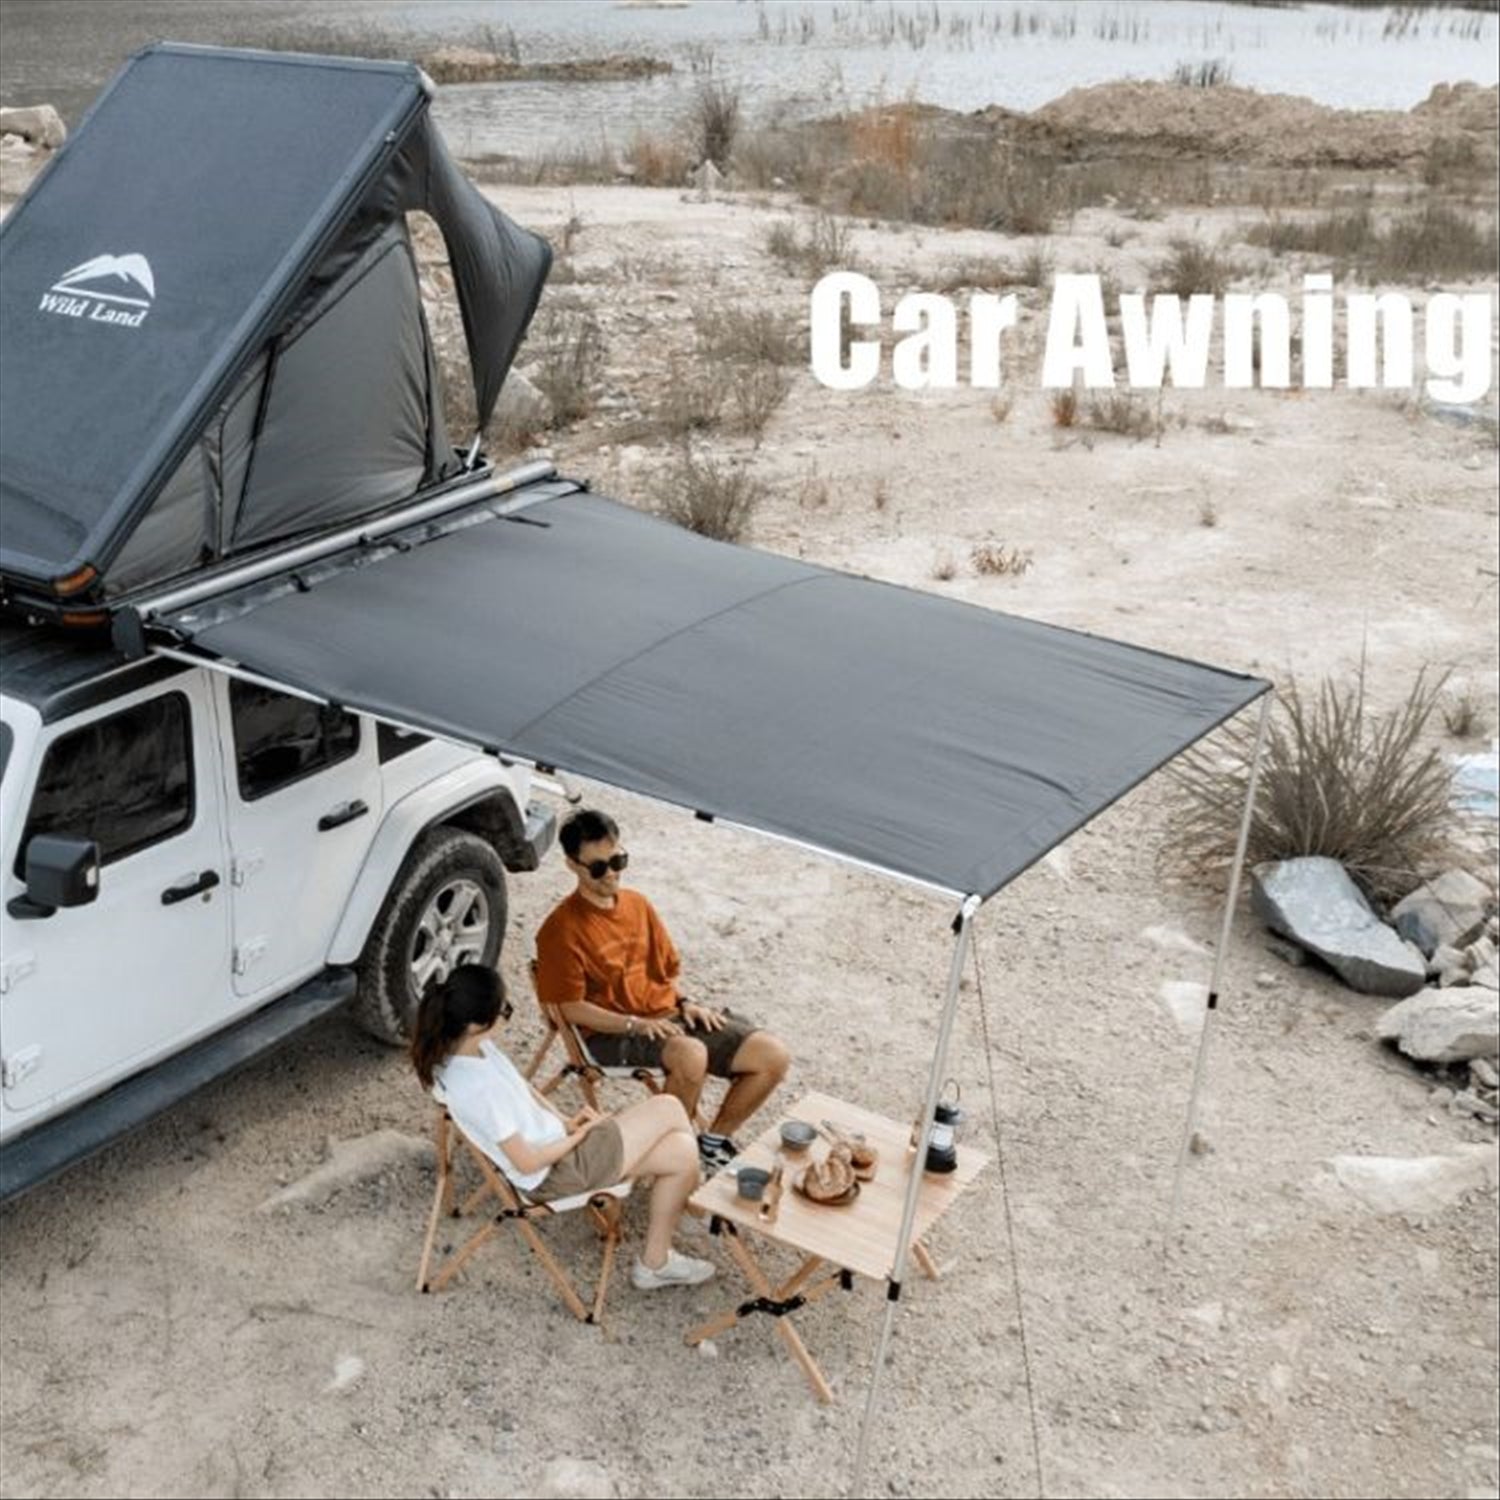 Wild Land Vehicle Side Awning with Aluminium hard case - 2m x 2.5m